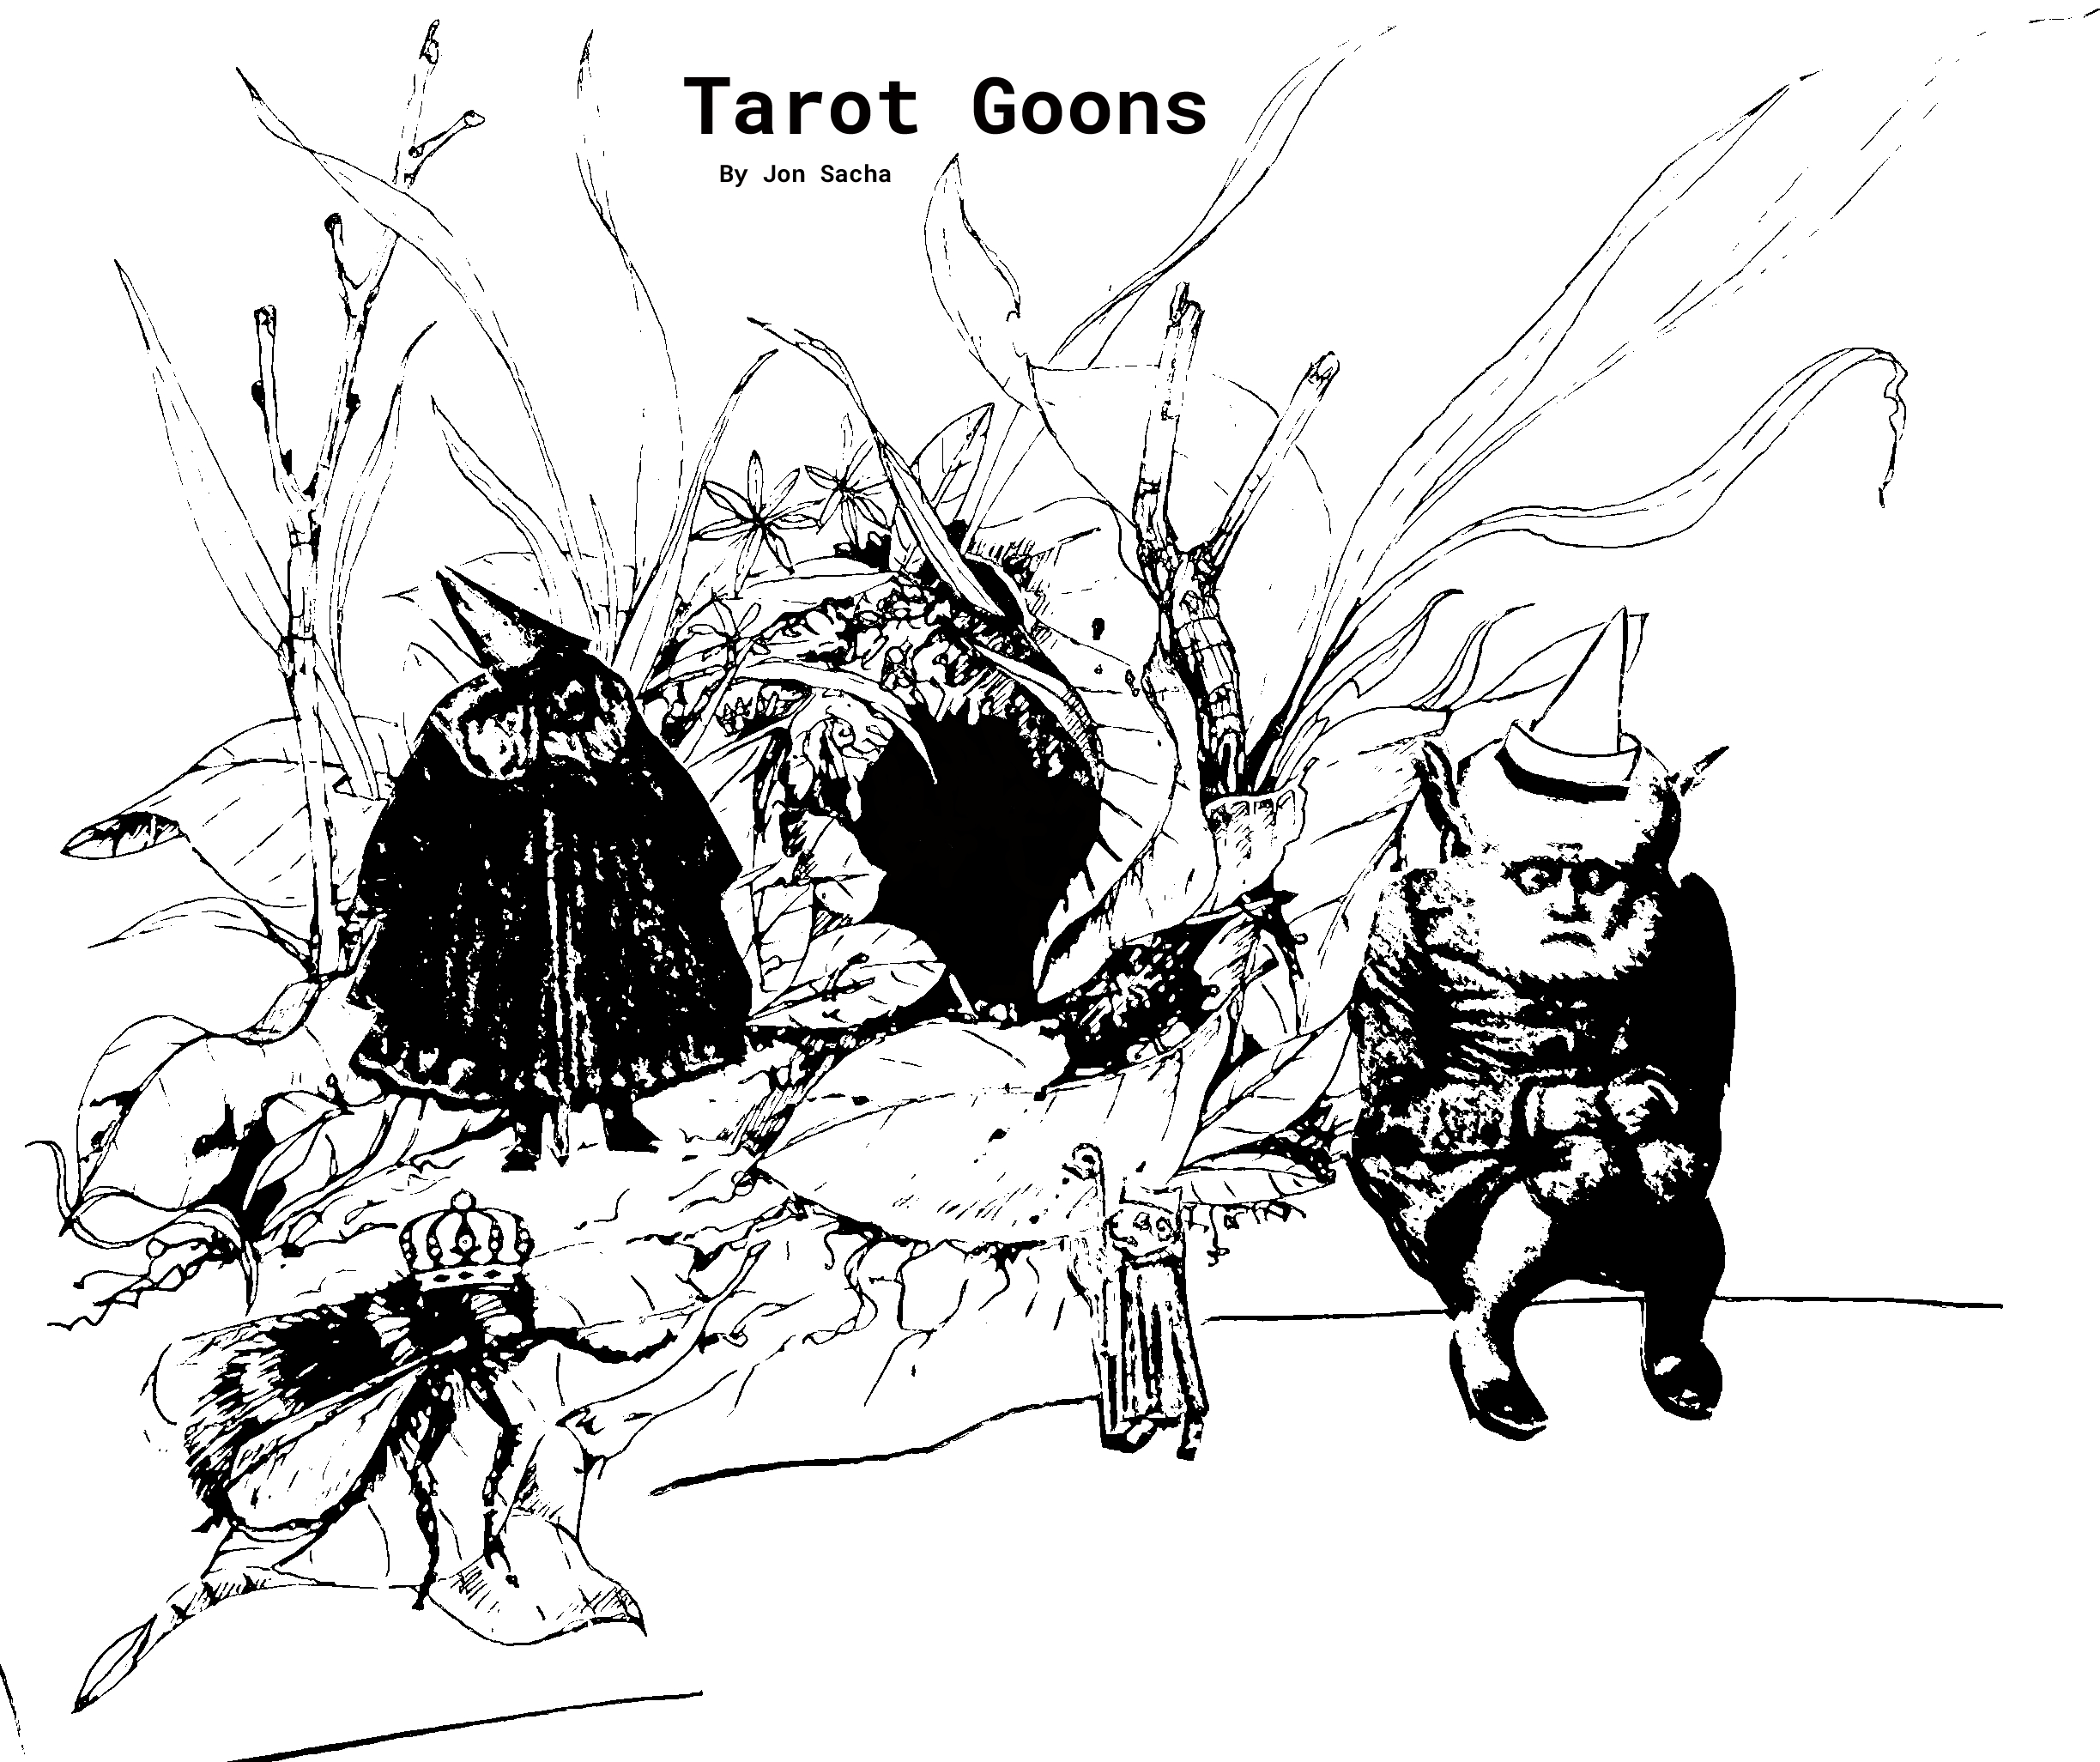 Tarot Goons